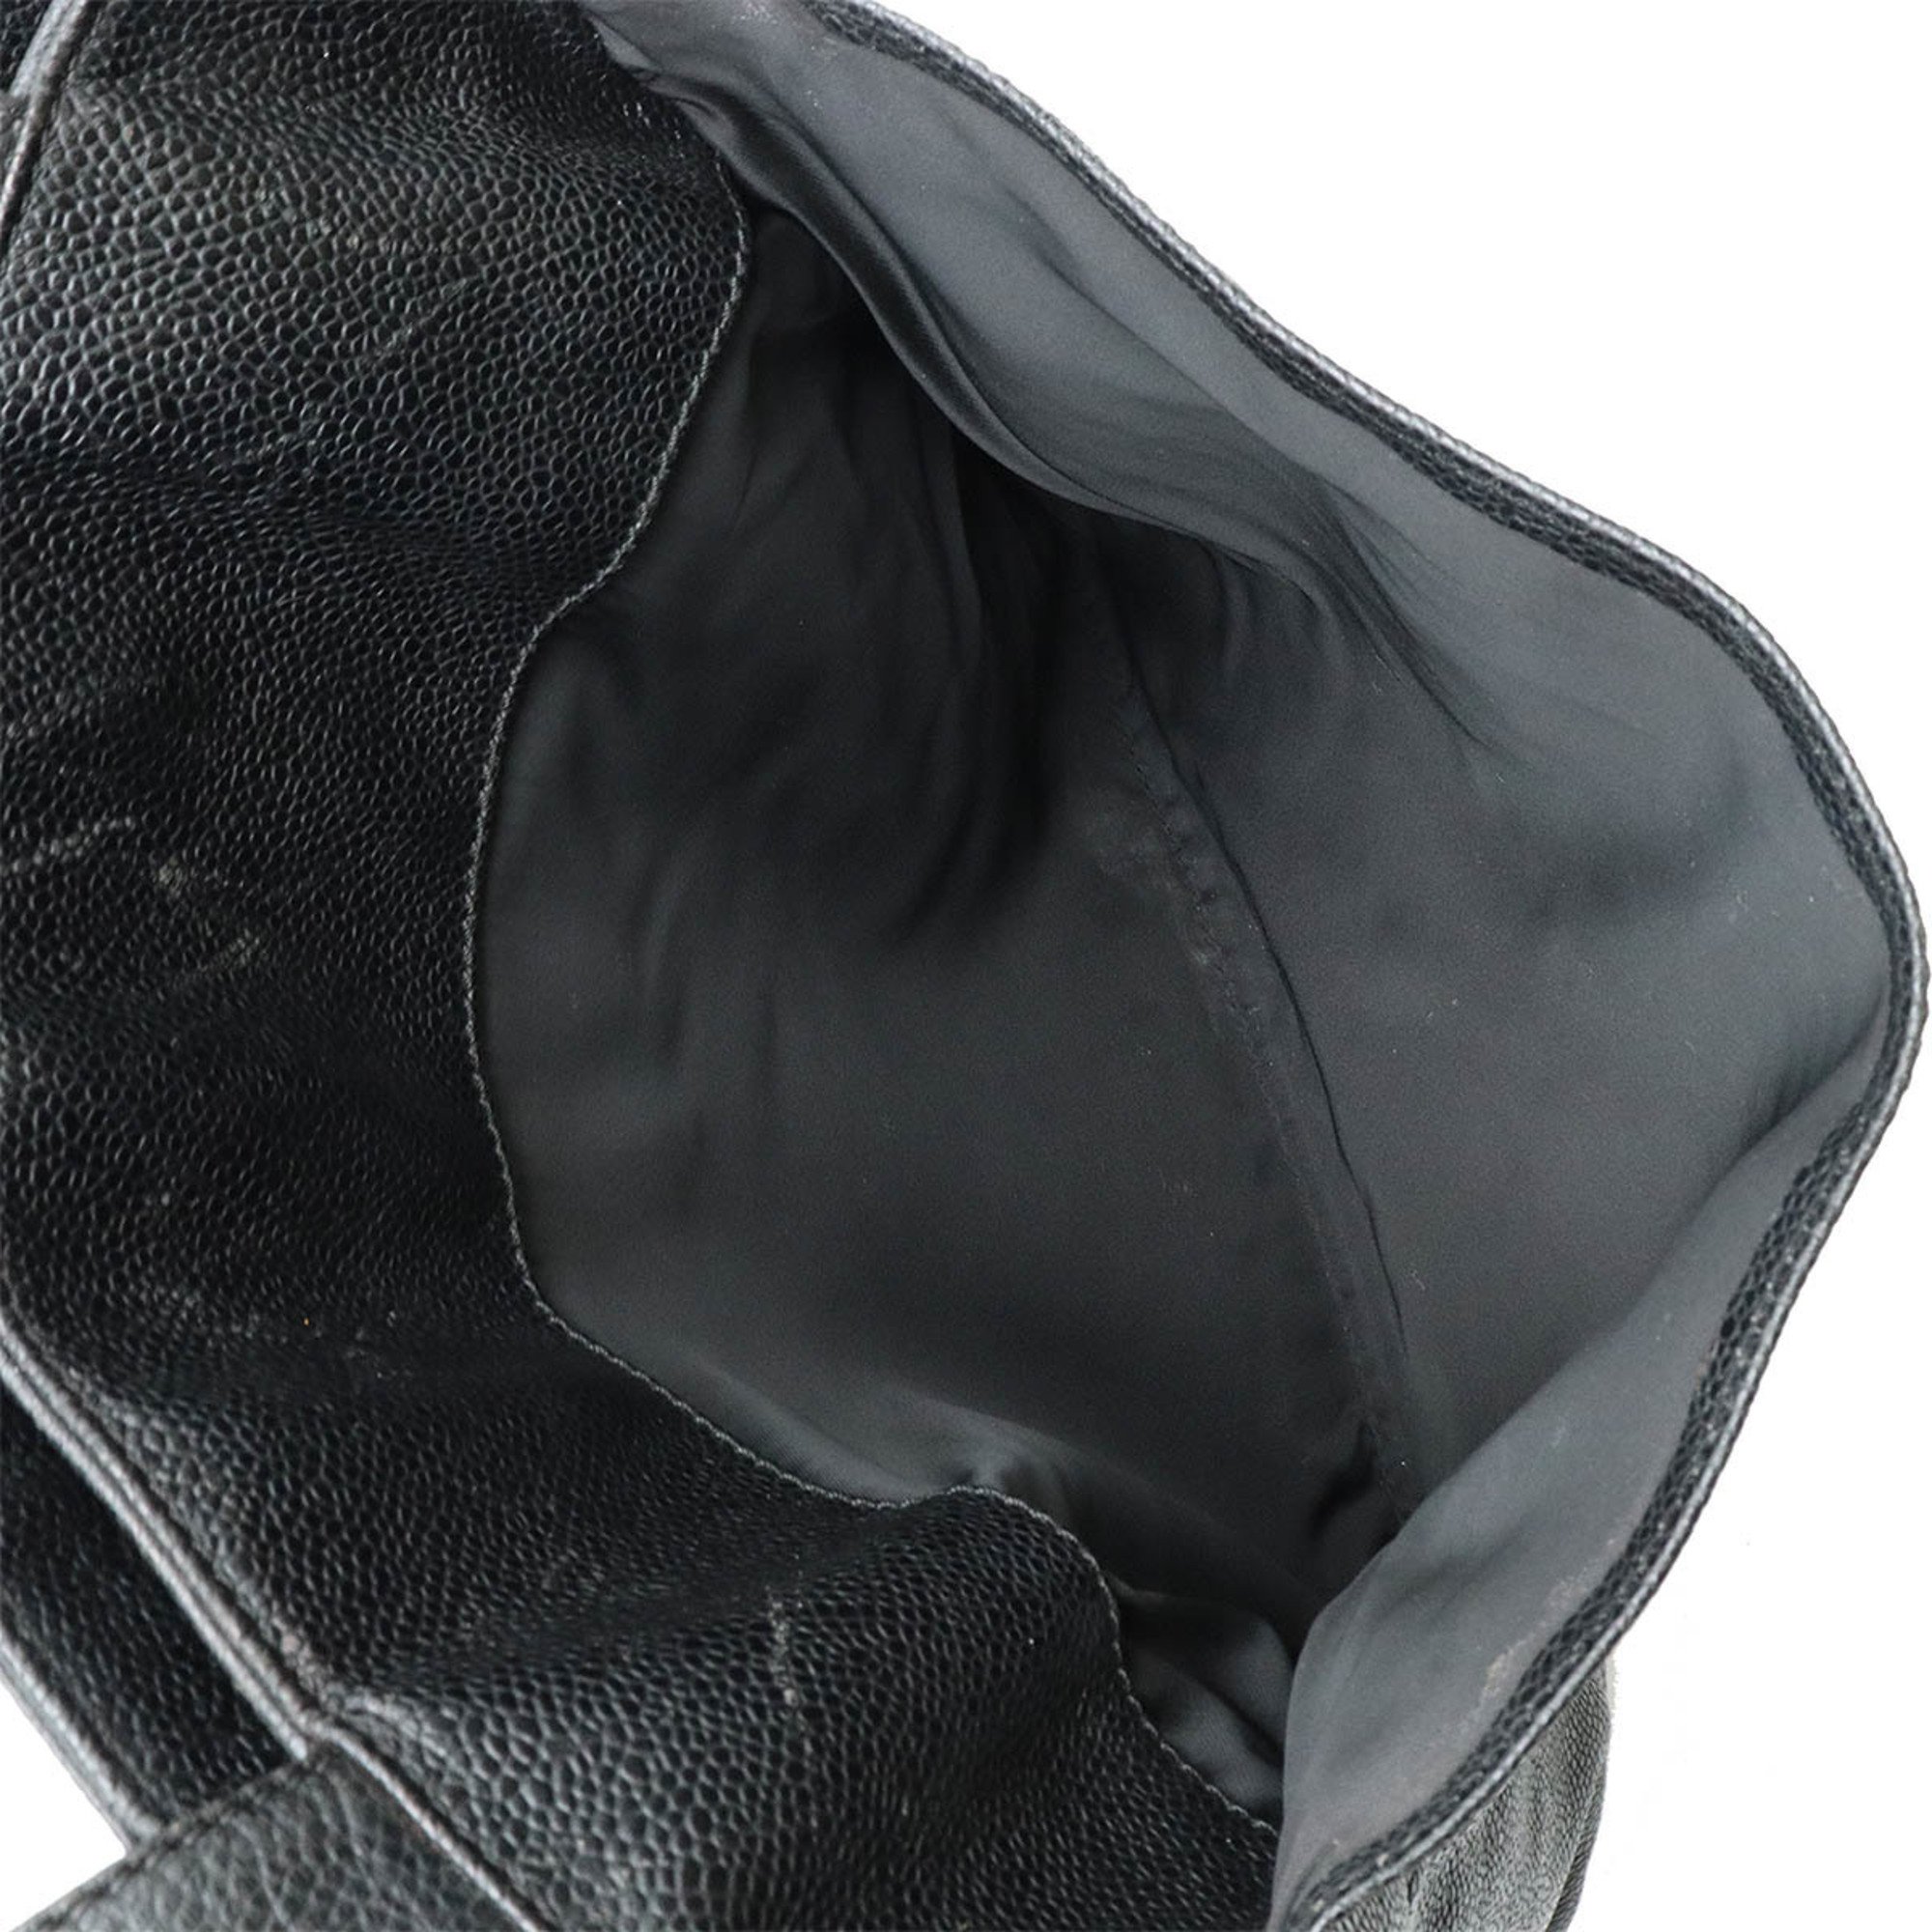 CHANEL Tote bag Shoulder Caviar skin Leather Black